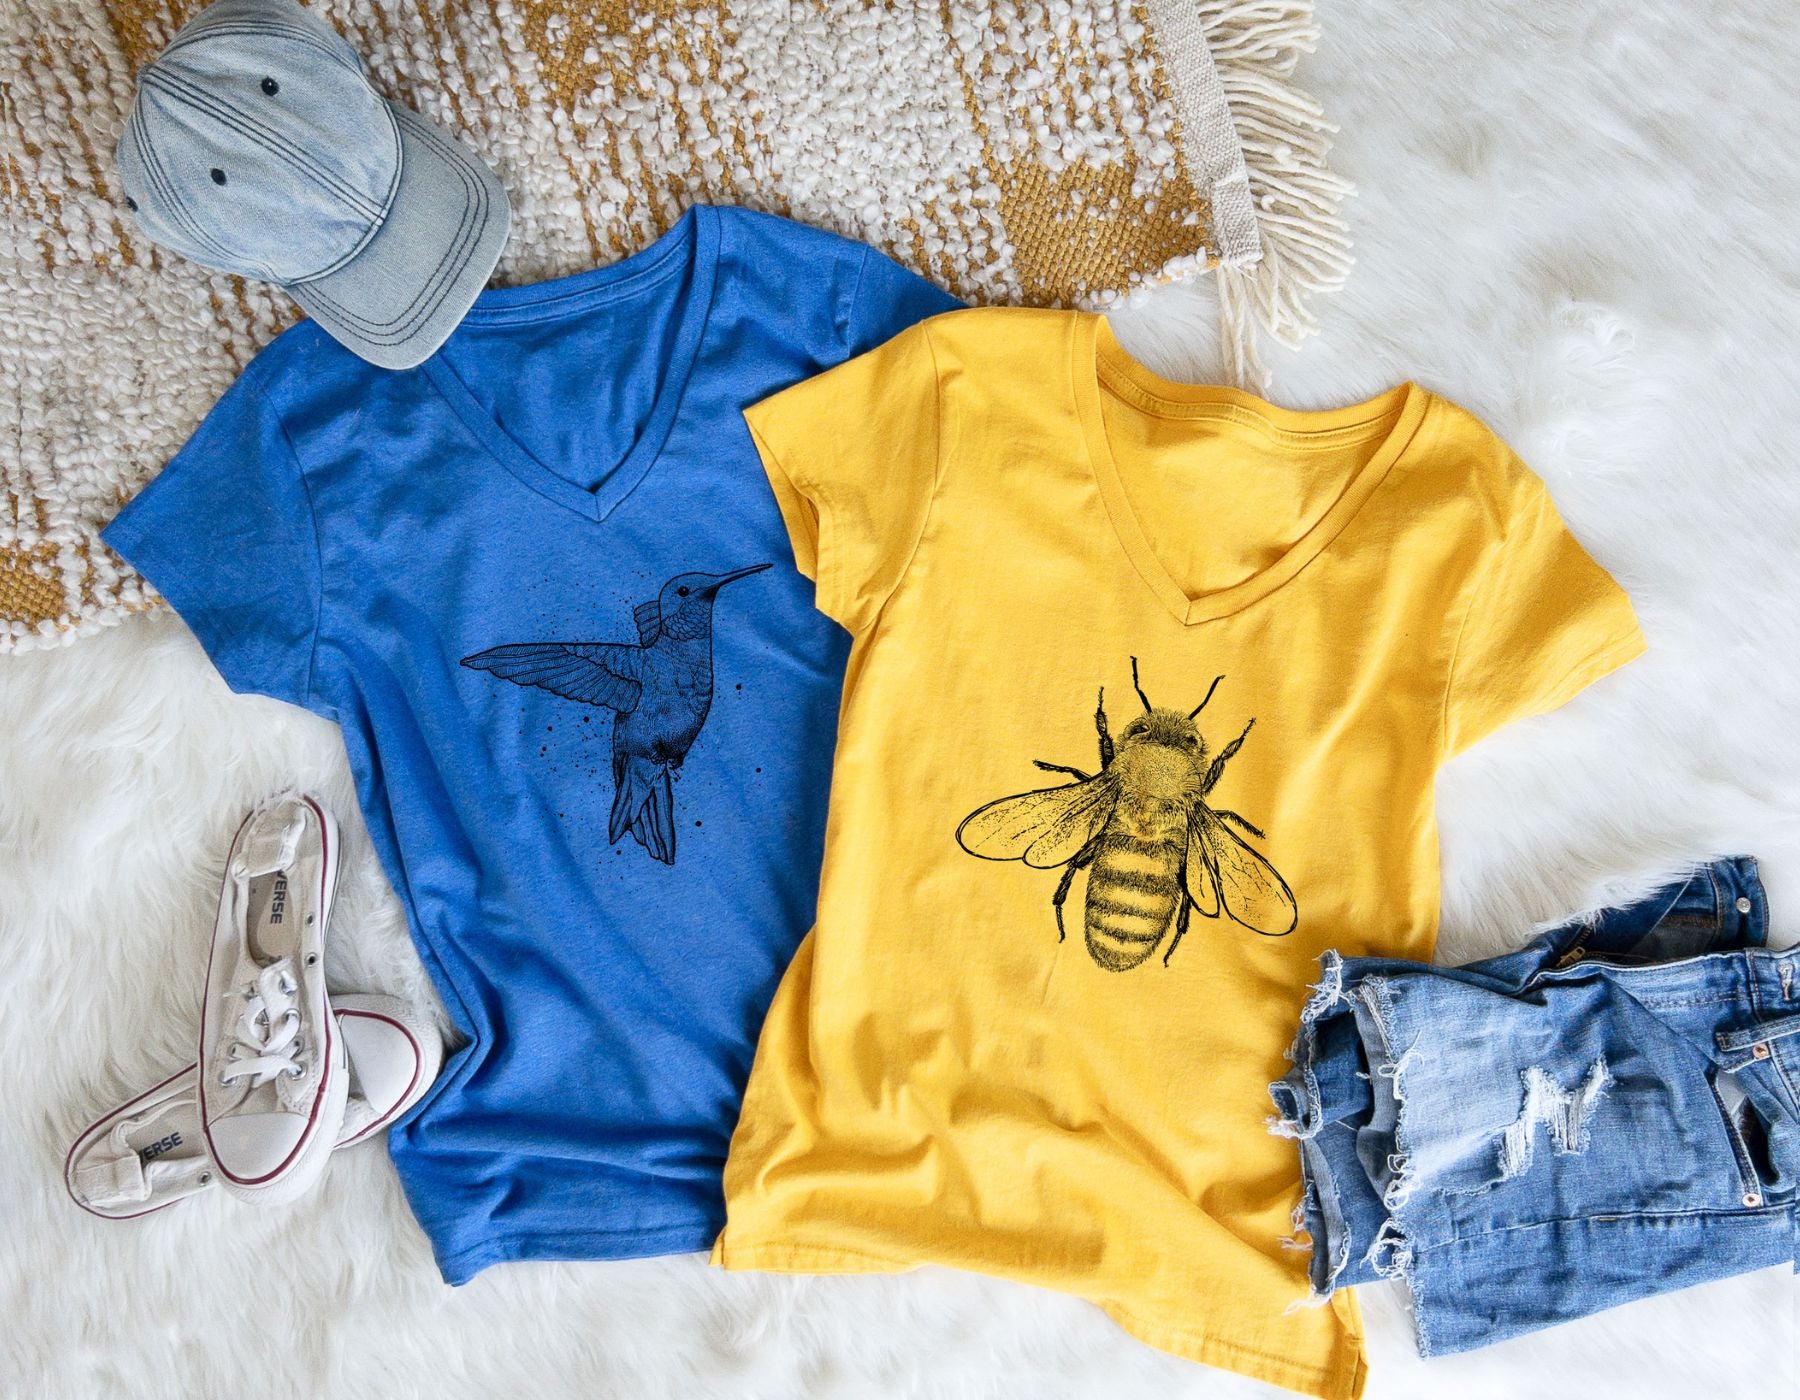 Pollinator apparel